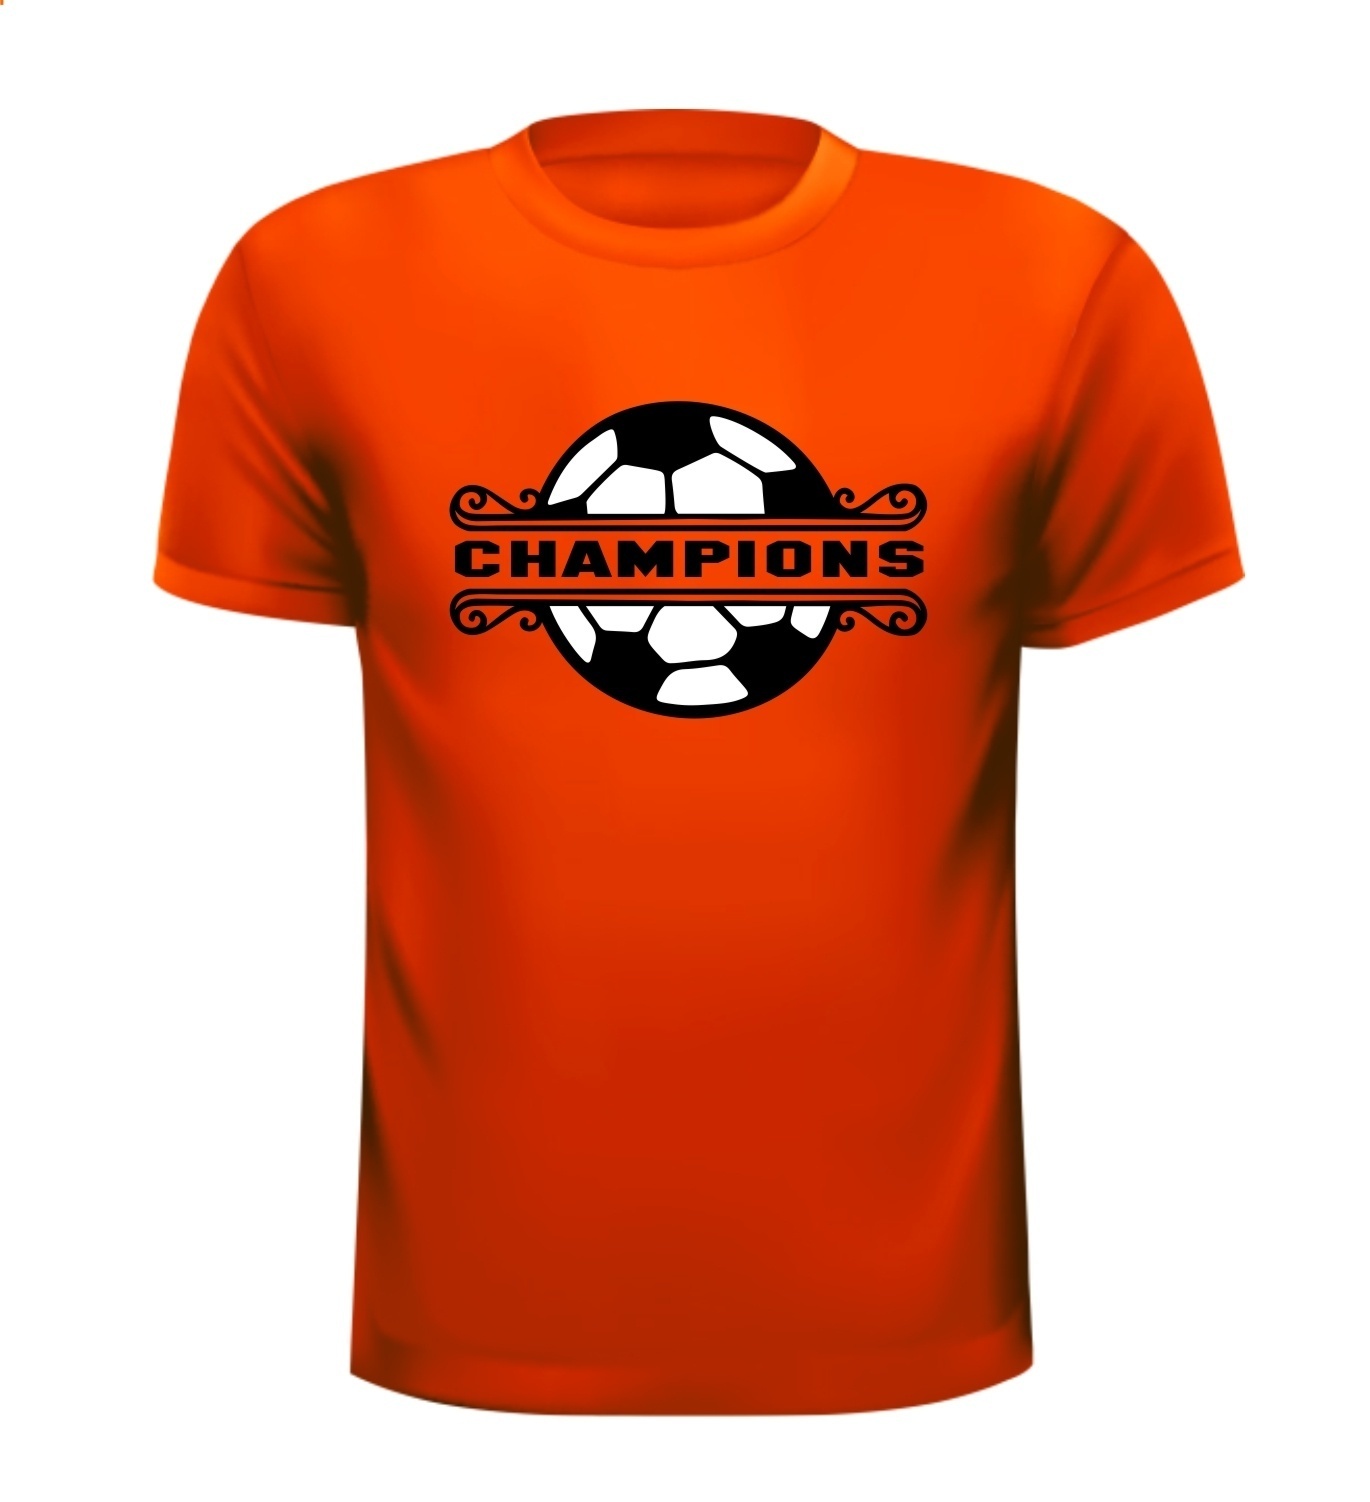 Champions oranje shirt voor EK of WK voetballen kampioenen